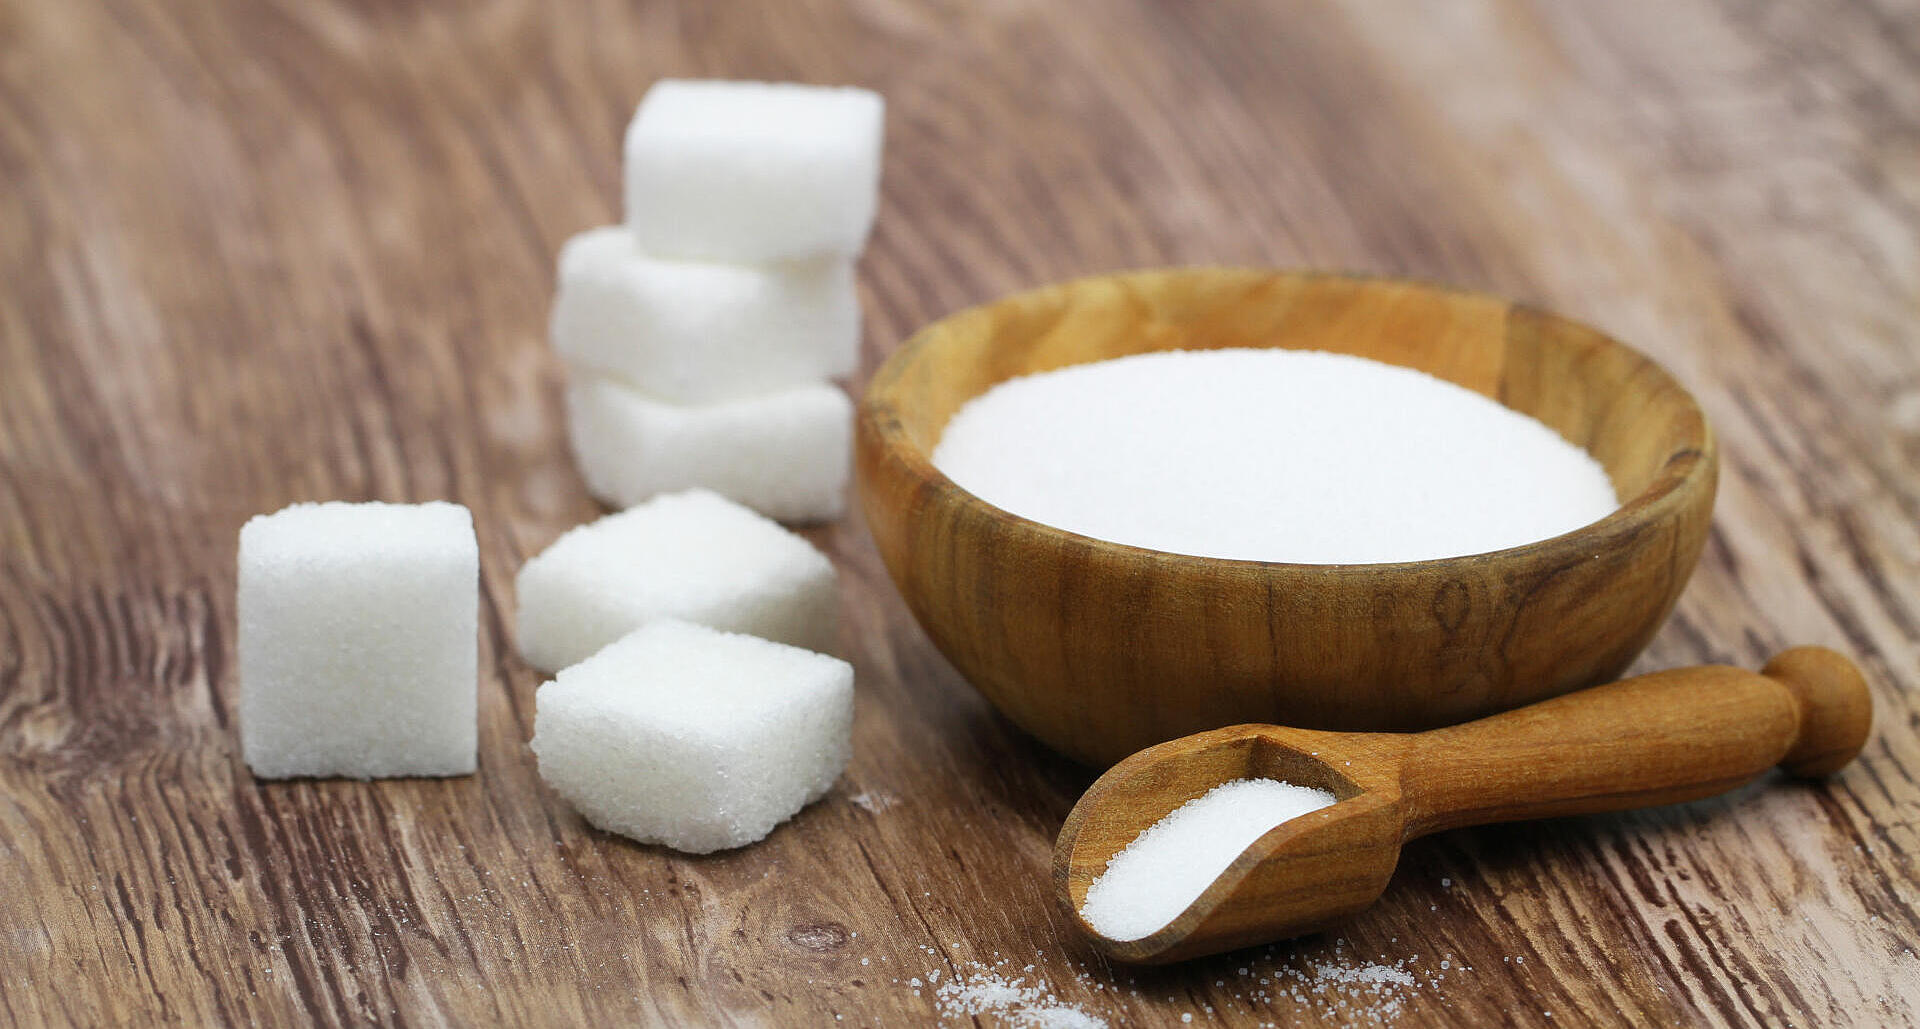 6. Zucker und Salz einsparen: Mit Zucker gesüßte Lebensmittel und Getränke sind nicht empfehlenswert. Vermeiden Sie diese möglichst und setzen Sie Zucker sparsam ein. Sparen Sie Salz und reduzieren Sie den Anteil salzreicher Lebensmittel. Würzen Sie kreativ mit Kräutern und Gewürzen.